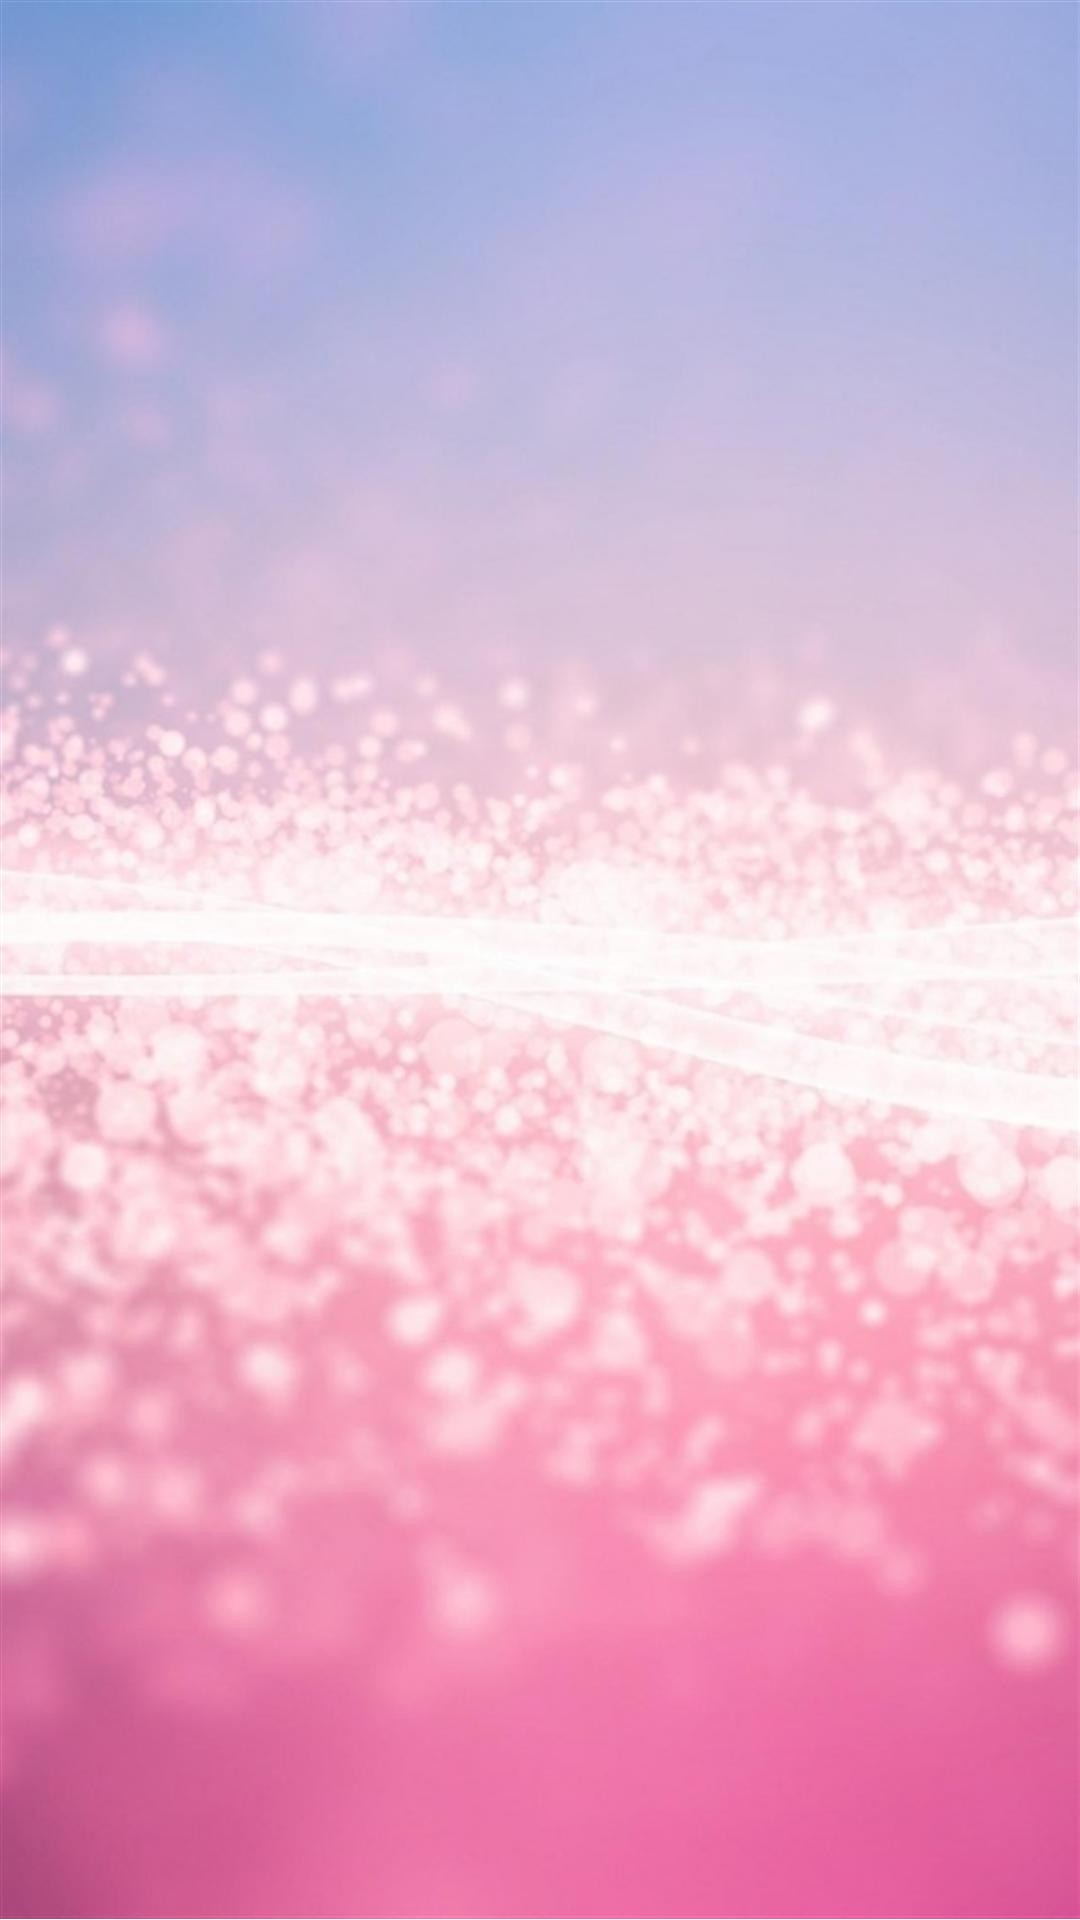 Pink Glitter Stardust Smartphone Wallpaper HD GetPhotos